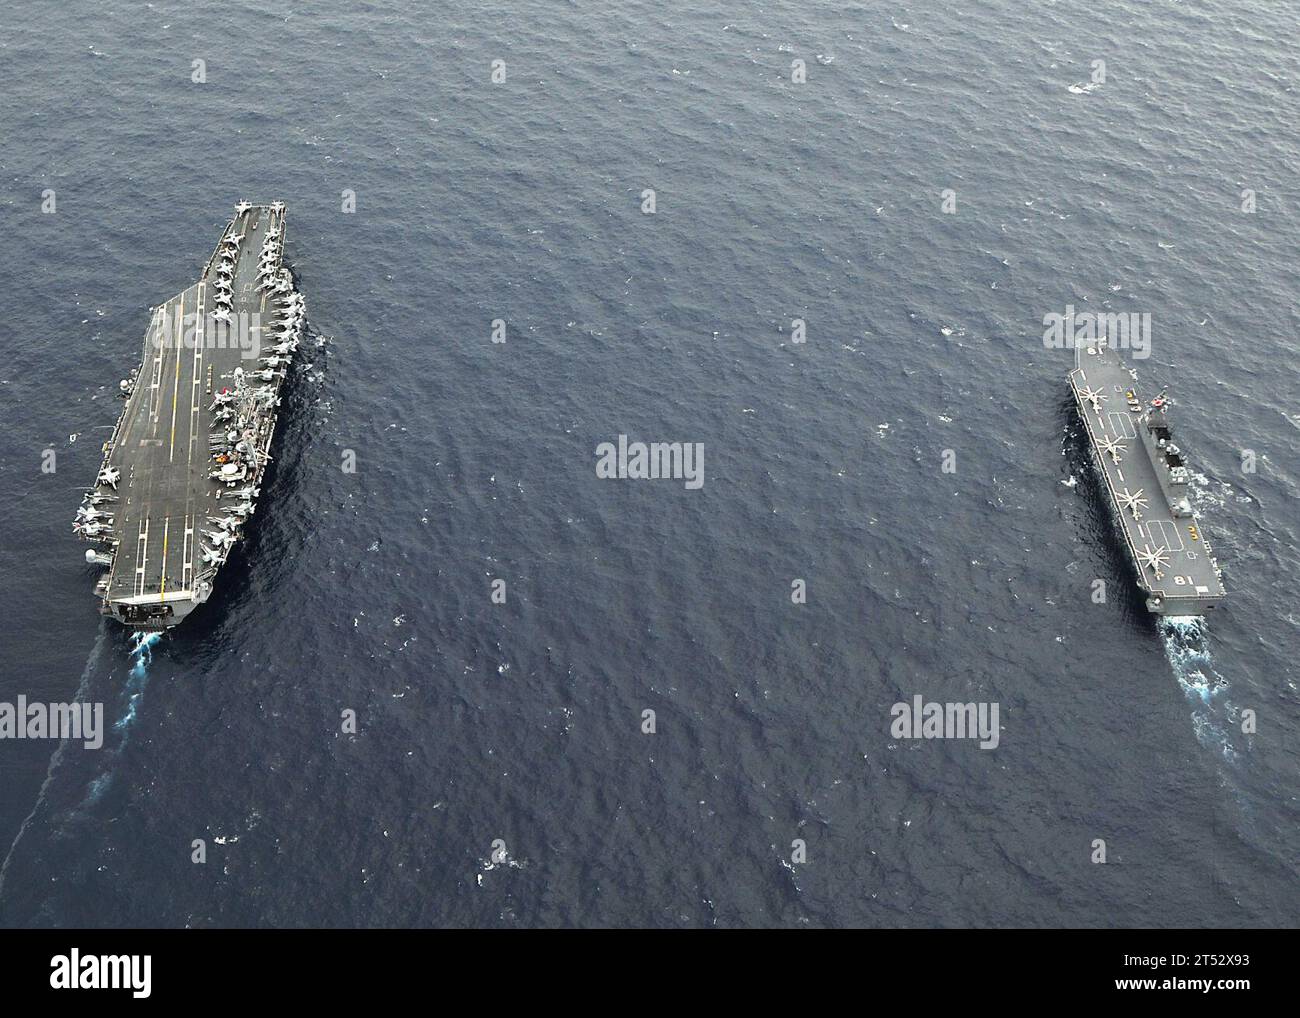 0911176233H-234 OCEANO PACIFICO (17 novembre 2009) la portaerei USS George Washington (CVN 73) e il cacciatorpediniere JS Hyuga (DDH 181) transitano nell'Oceano Pacifico. Le navi della Marina degli Stati Uniti e della forza di autodifesa marittima del Giappone stanno partecipando all'esercitazione annuale (ANNUALEX 21G), un esercizio bilaterale progettato per migliorare le capacità di entrambe le forze navali. Foto Stock